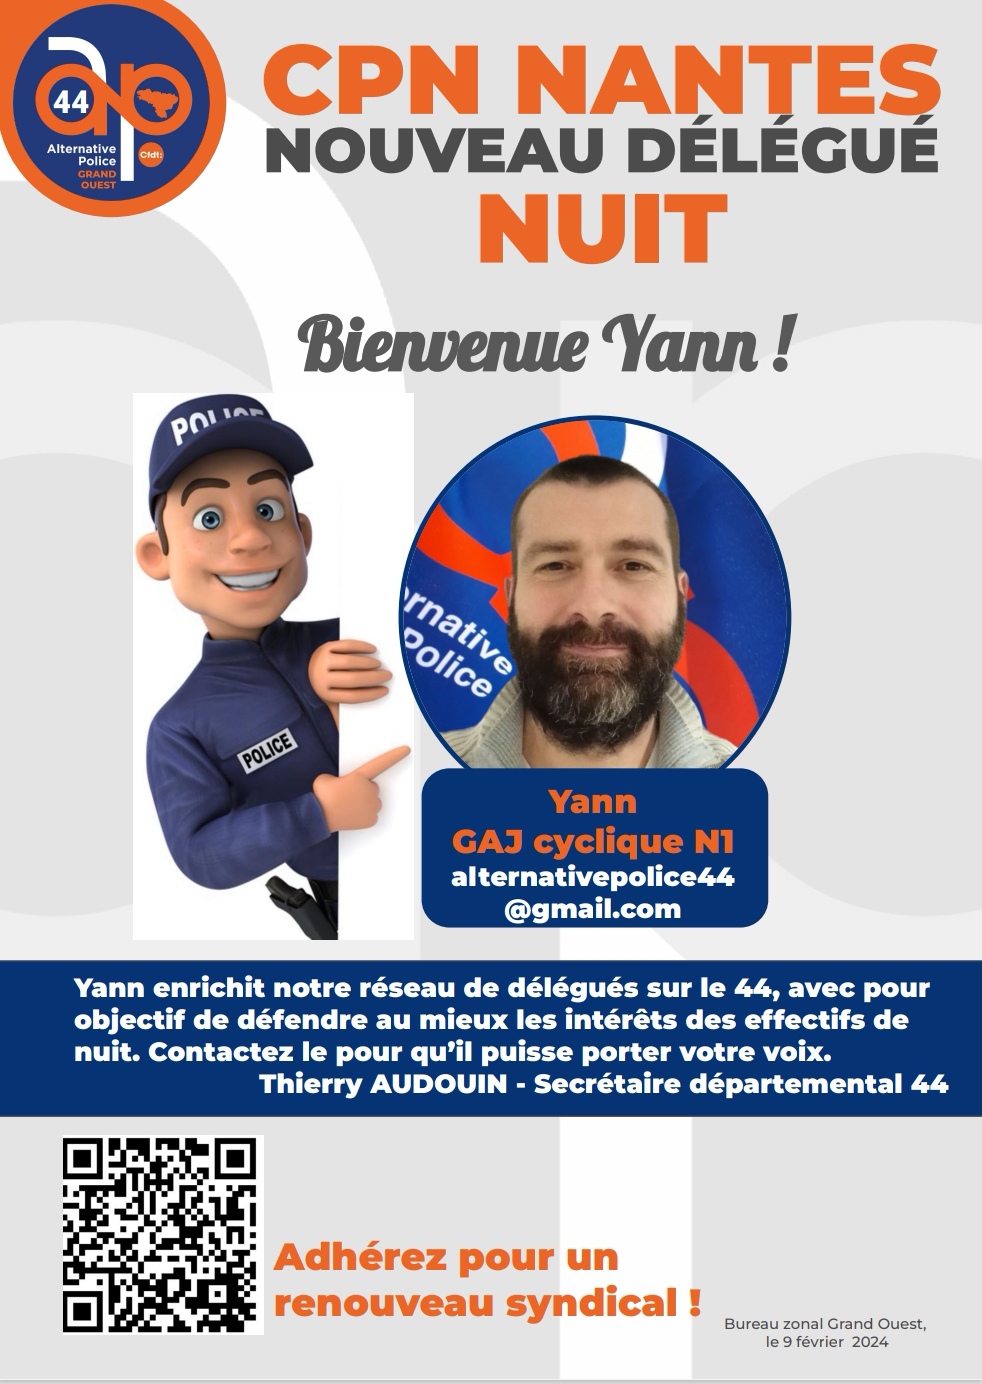  Bienvenue Yann ! Nouveau délégué nuit au CPN Nantes